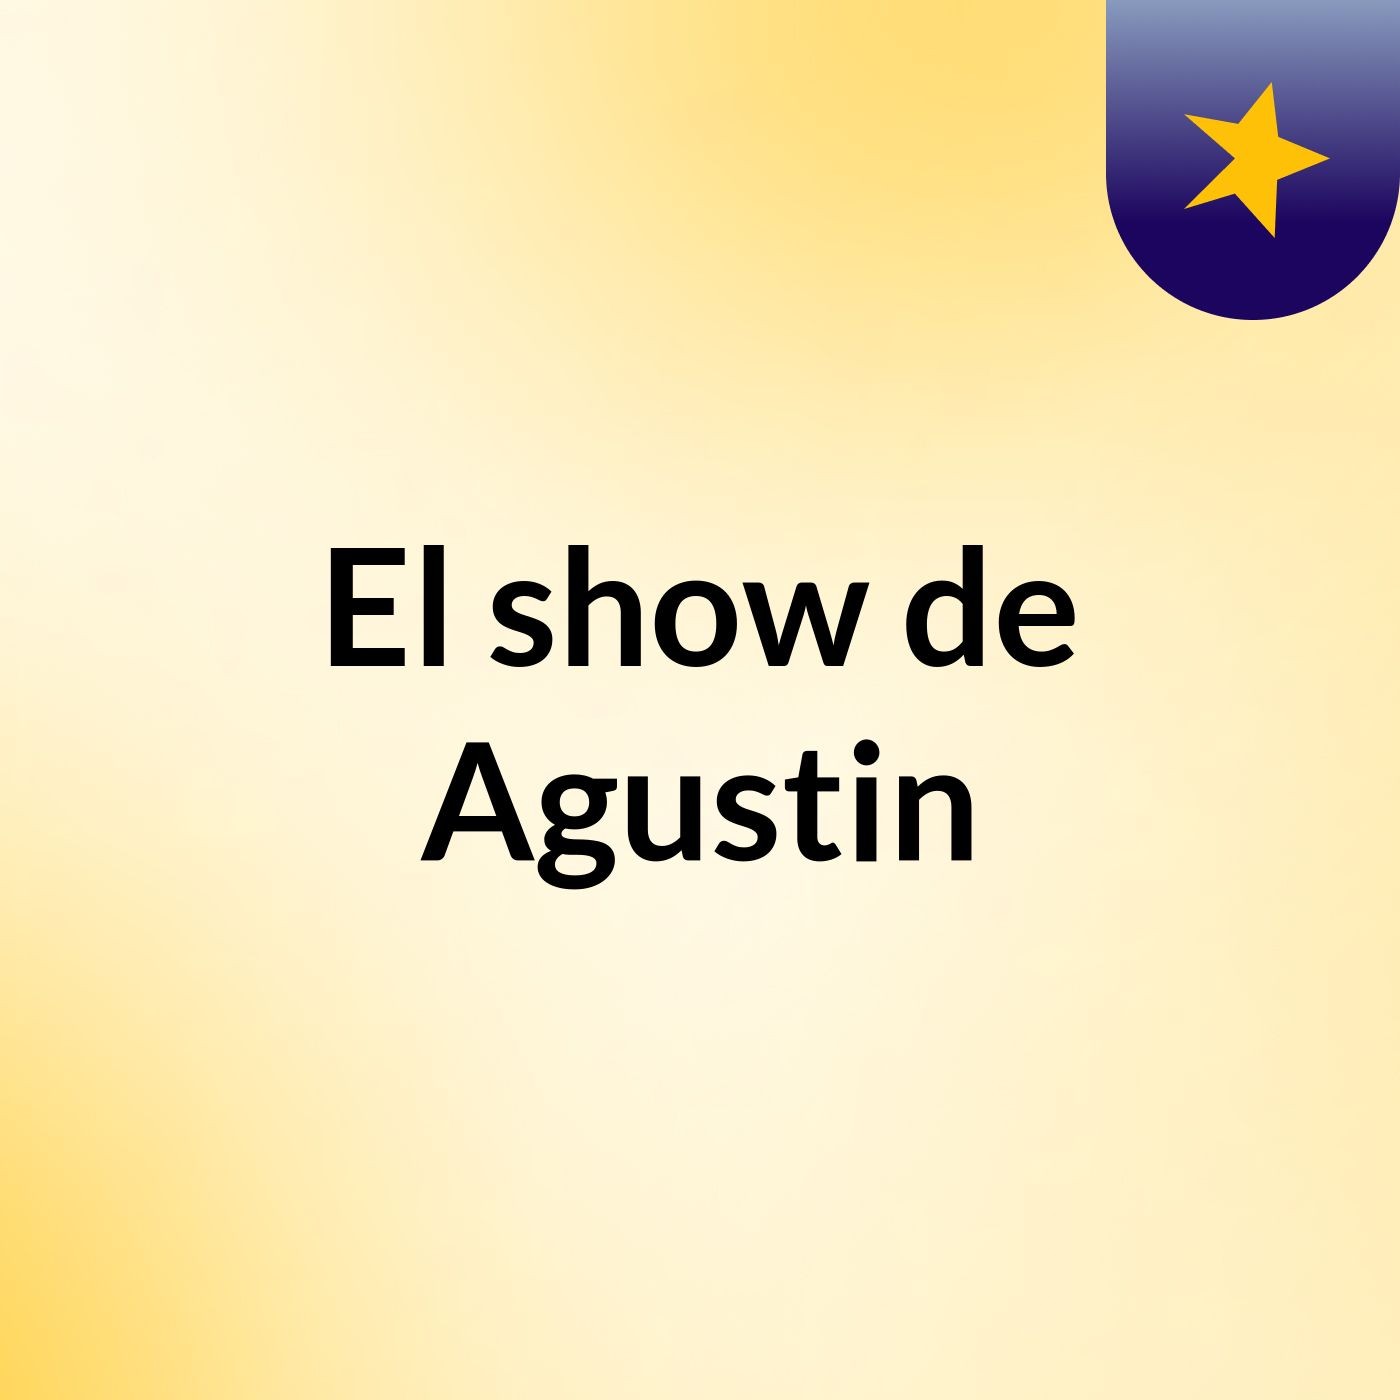 El show de Agustin